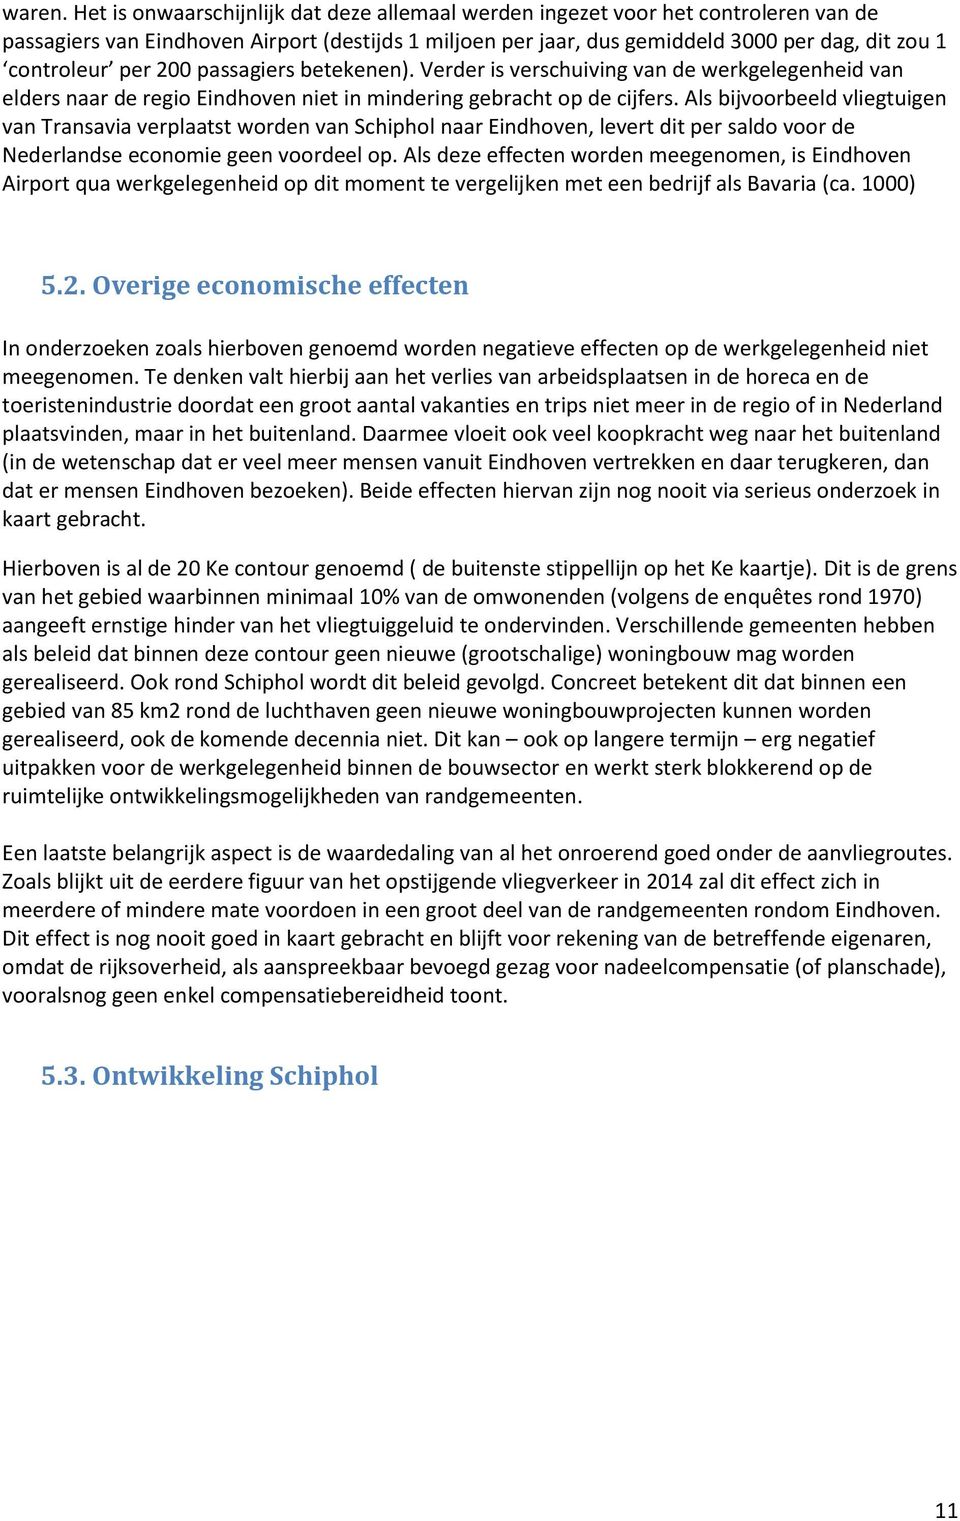 per 200 passagiers betekenen). Verder is verschuiving van de werkgelegenheid van elders naar de regio Eindhoven niet in mindering gebracht op de cijfers.